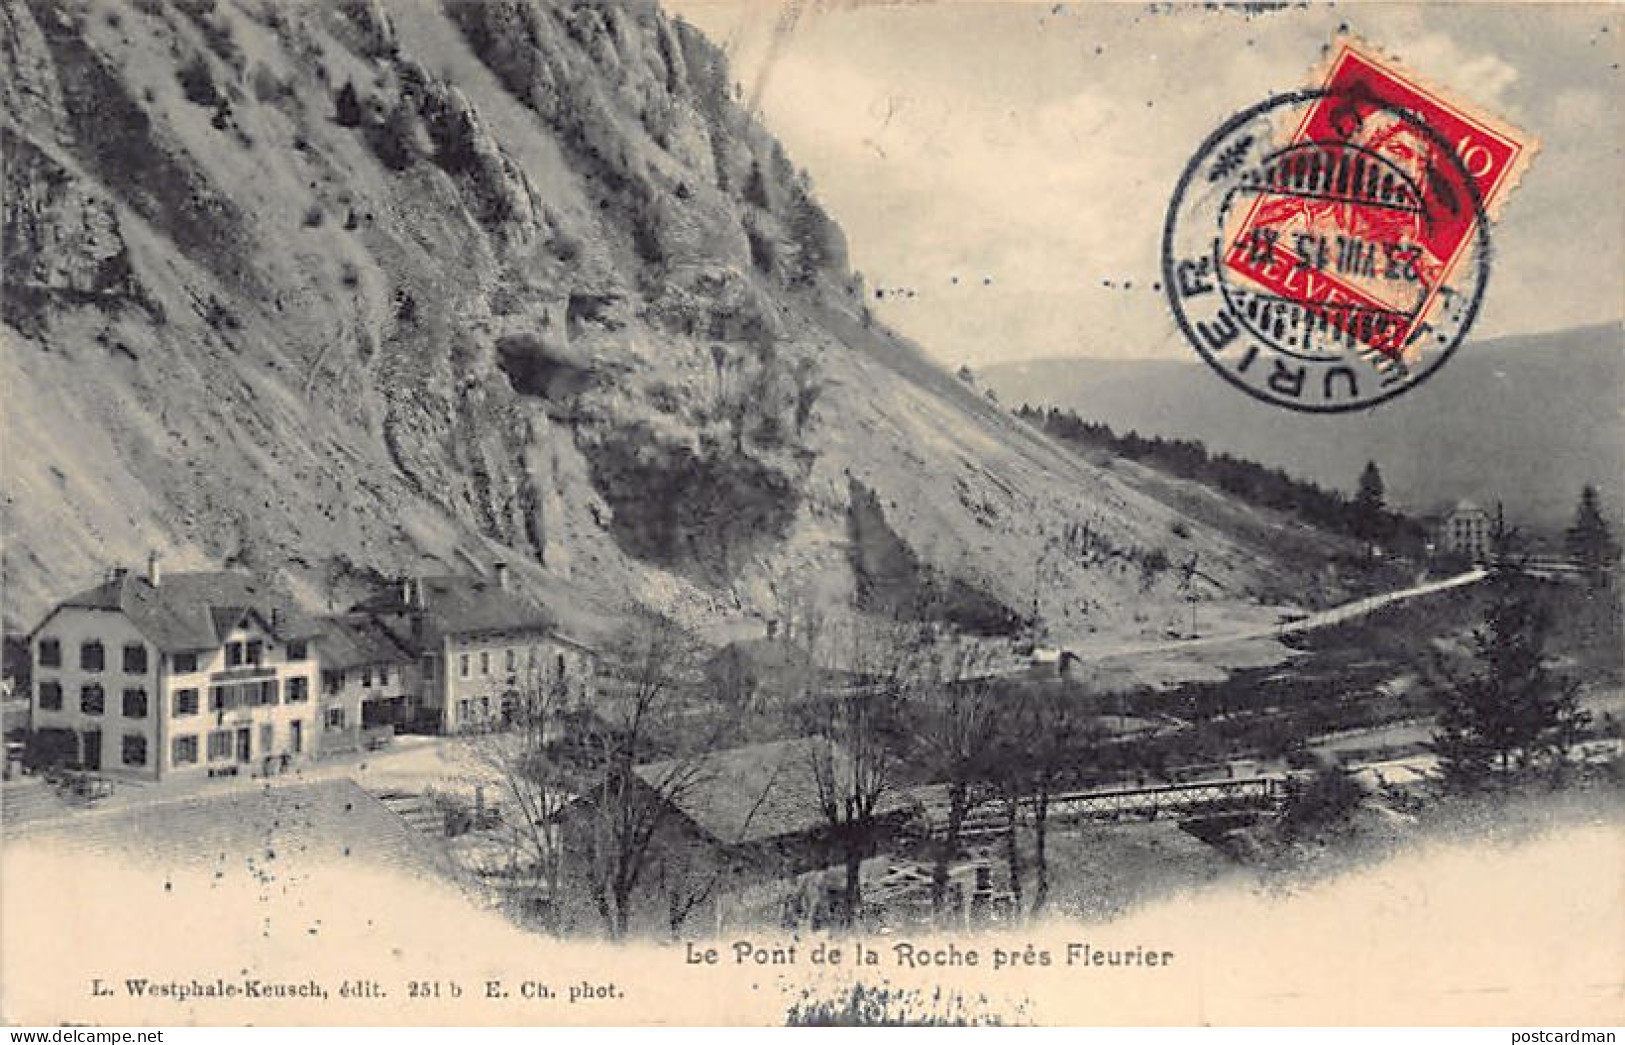 Suisse - Fleurier (NE) - Le Pont De La Roche - Ed. L. Westphale-Keusch 251b - Fleurier